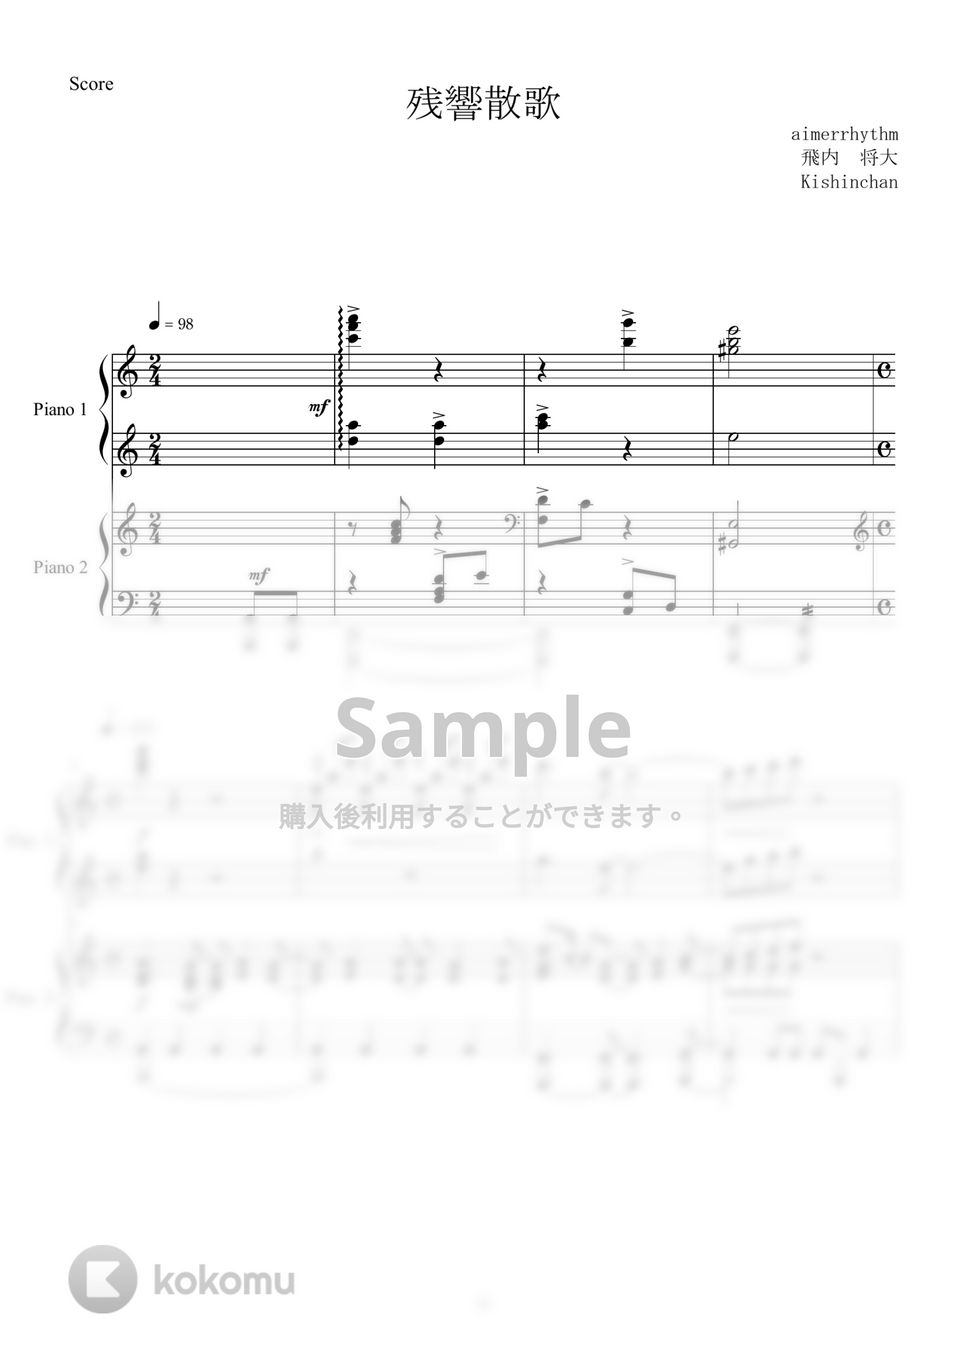 鬼滅の刃 - 残響散歌 (ピアノ連弾) by Kishinchan